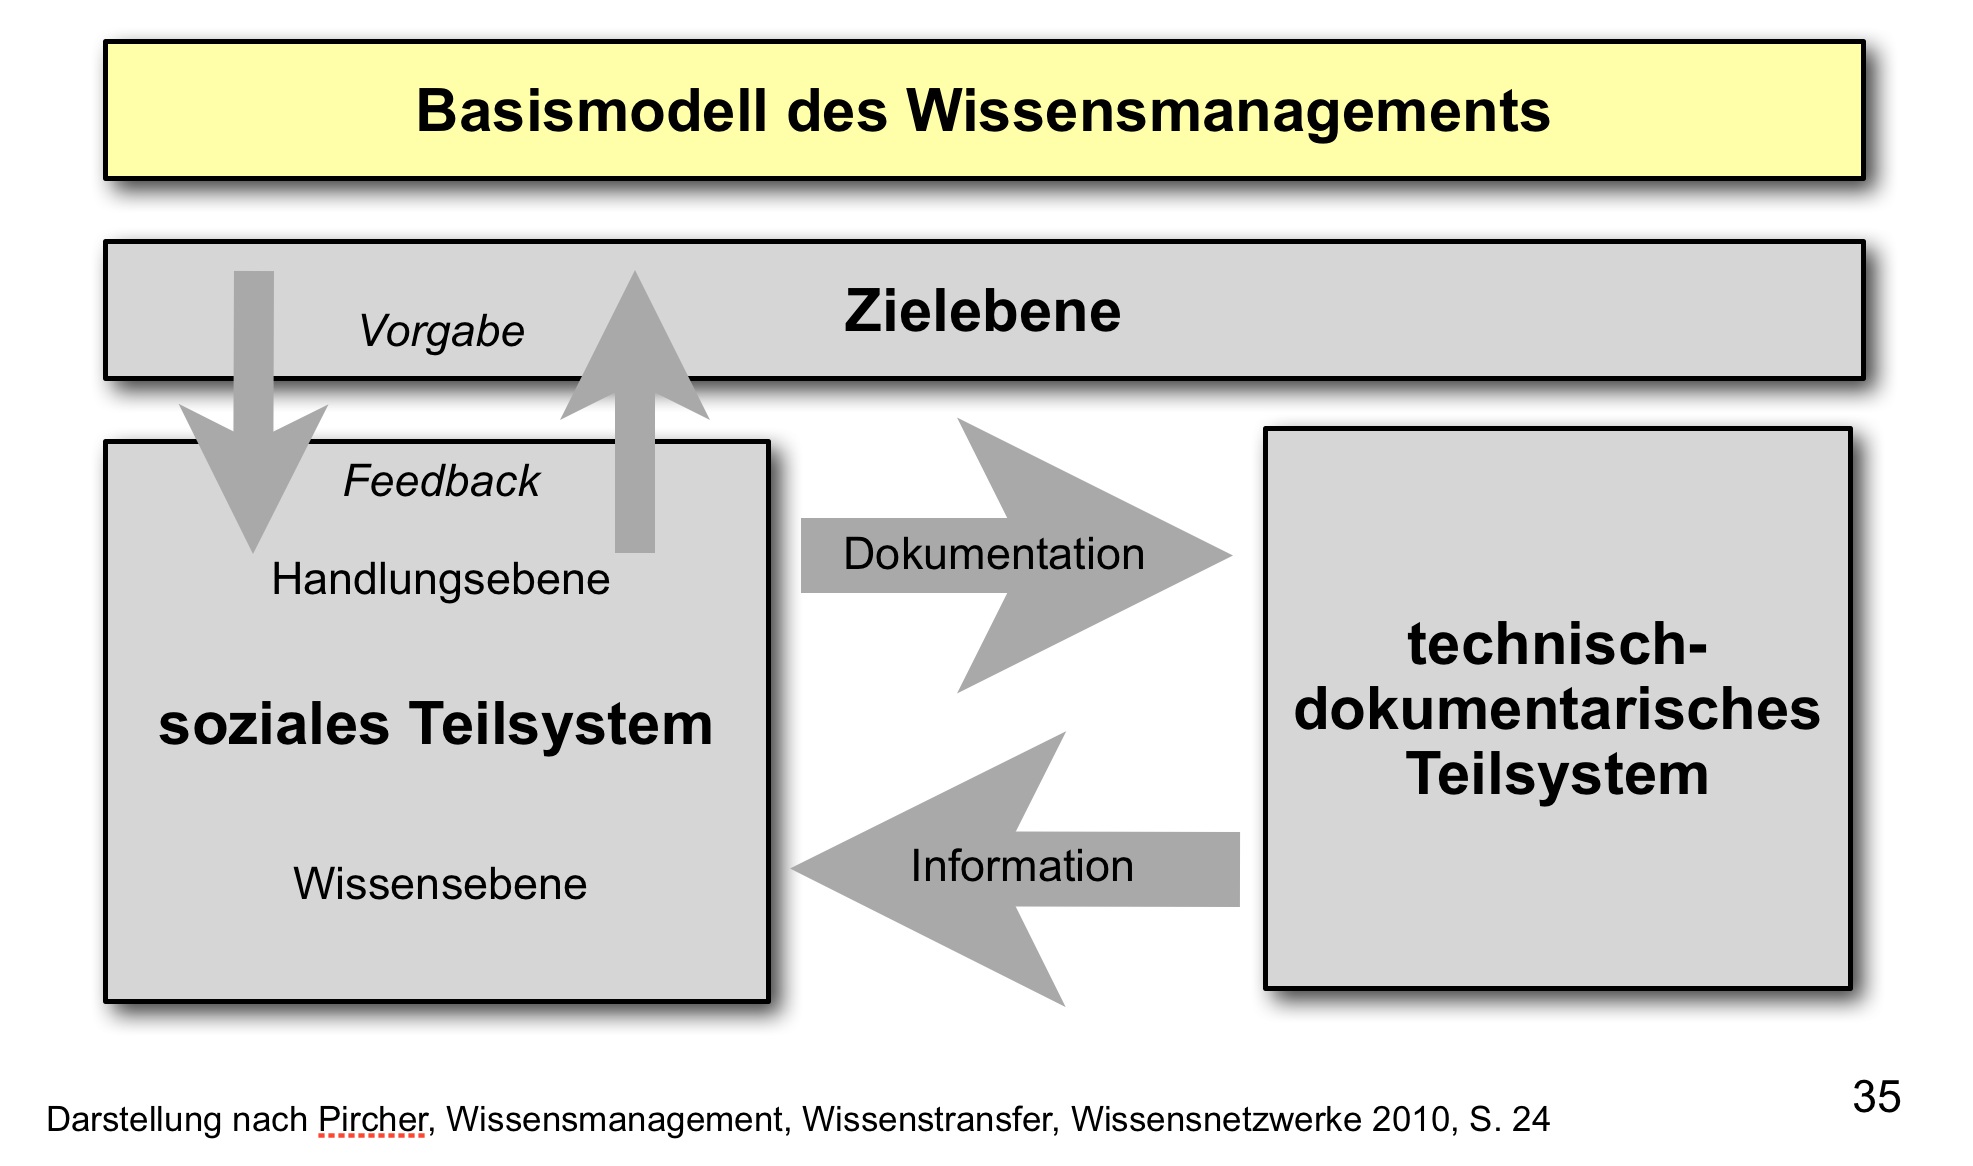  (image: https://wdb.fh-sm.de/uploads/WissensmanagementOrganisation/WM_ganzheitlicher_Ansatz.jpg) 